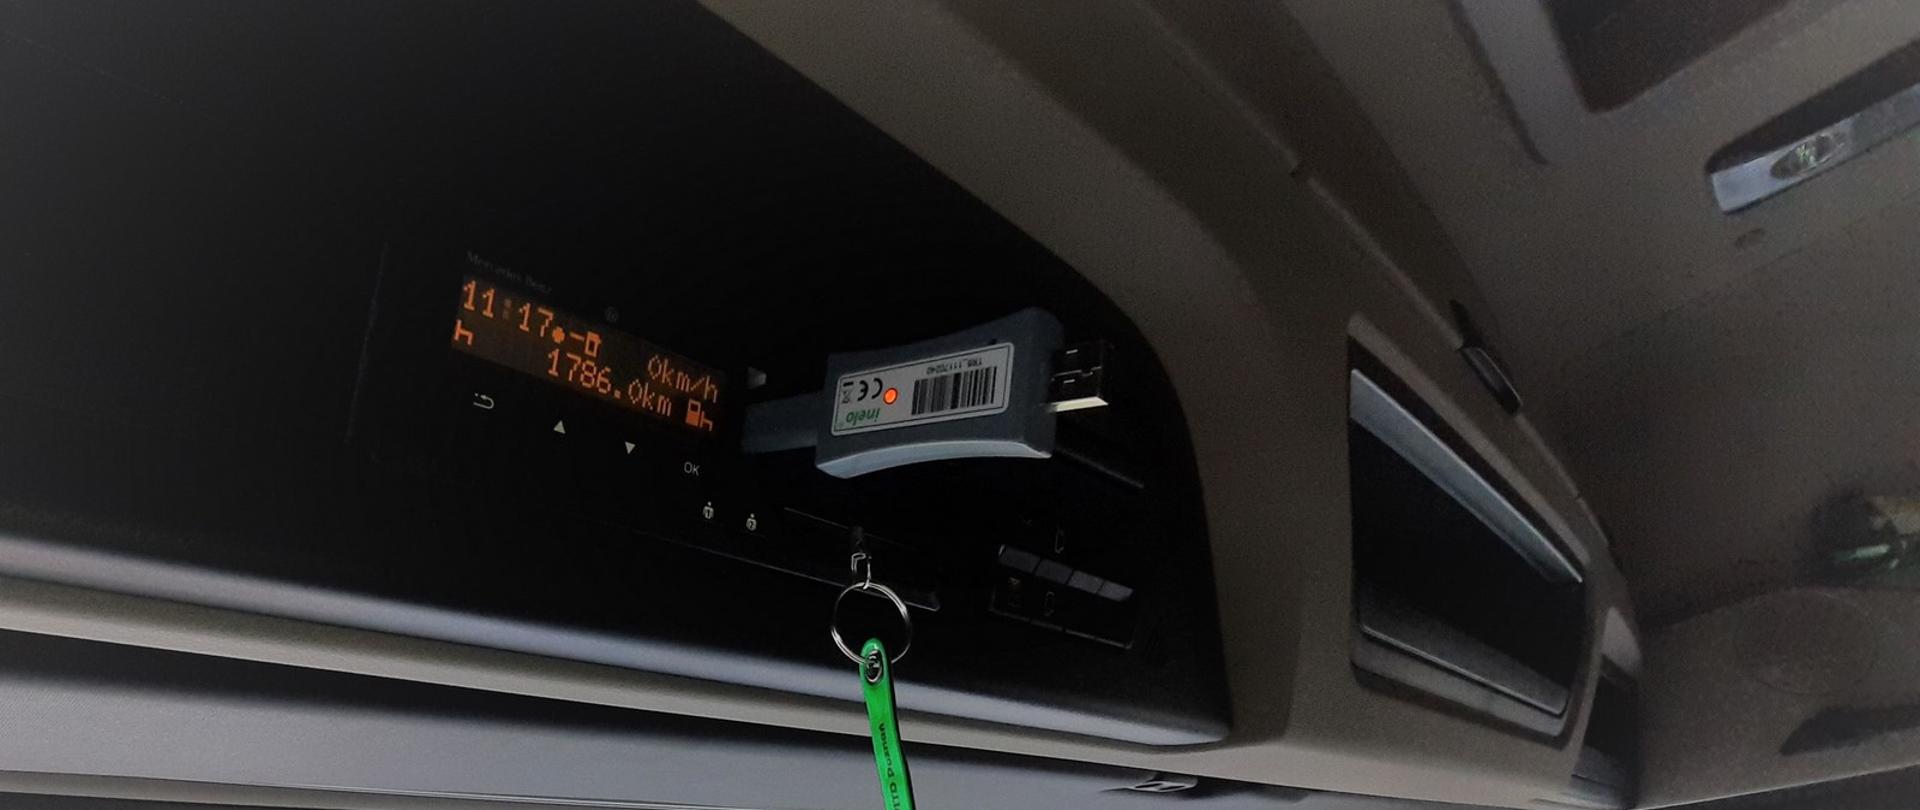 Tachograf zainstalowany w kontrolowanym pojeździe nie przeszedł kalibracji urządzenia